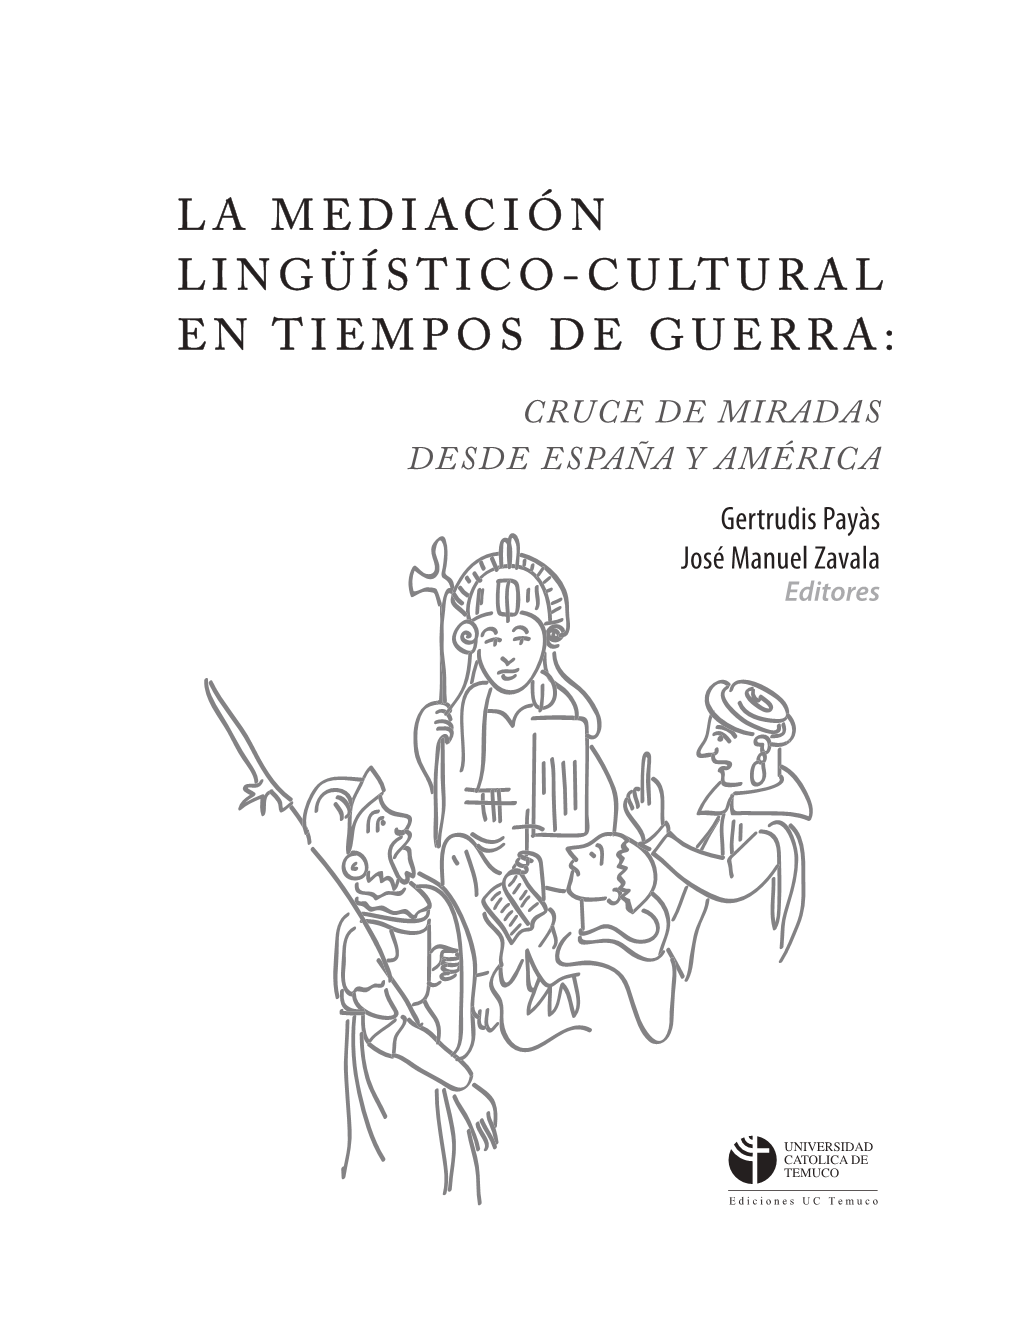 La Mediación Linguistico-Cultural En Tiempos De Guerra: Cruce De Miradas Desde España Y América